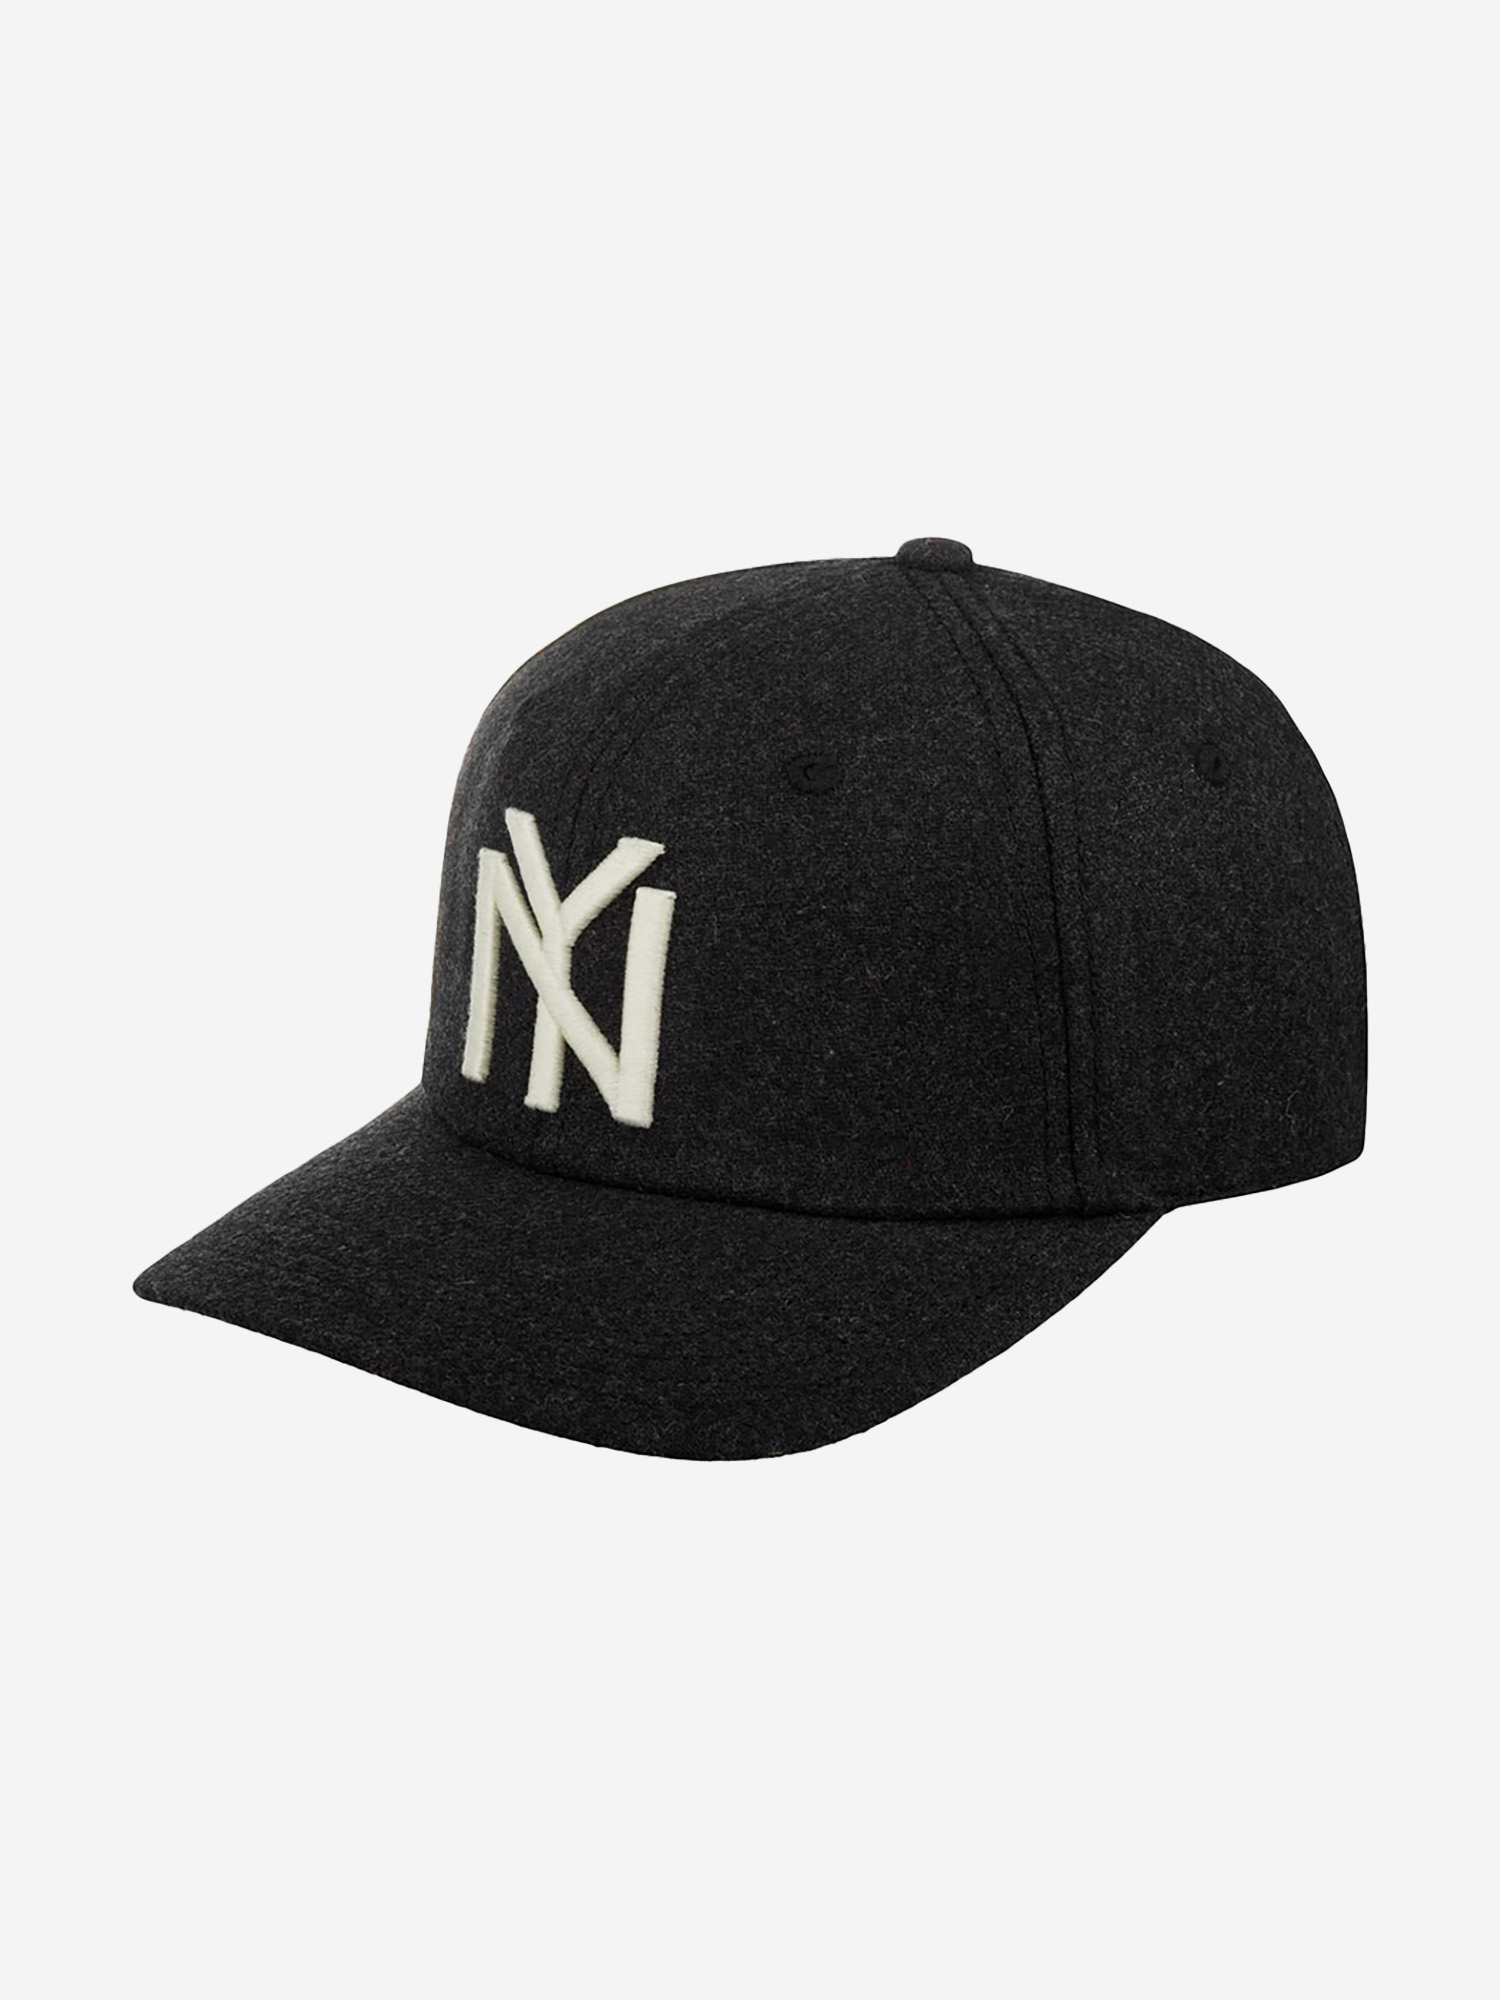 Бейсболка AMERICAN NEEDLE 21005A-NBY New York Black Yankees Archive Legend NL (черный), Черный